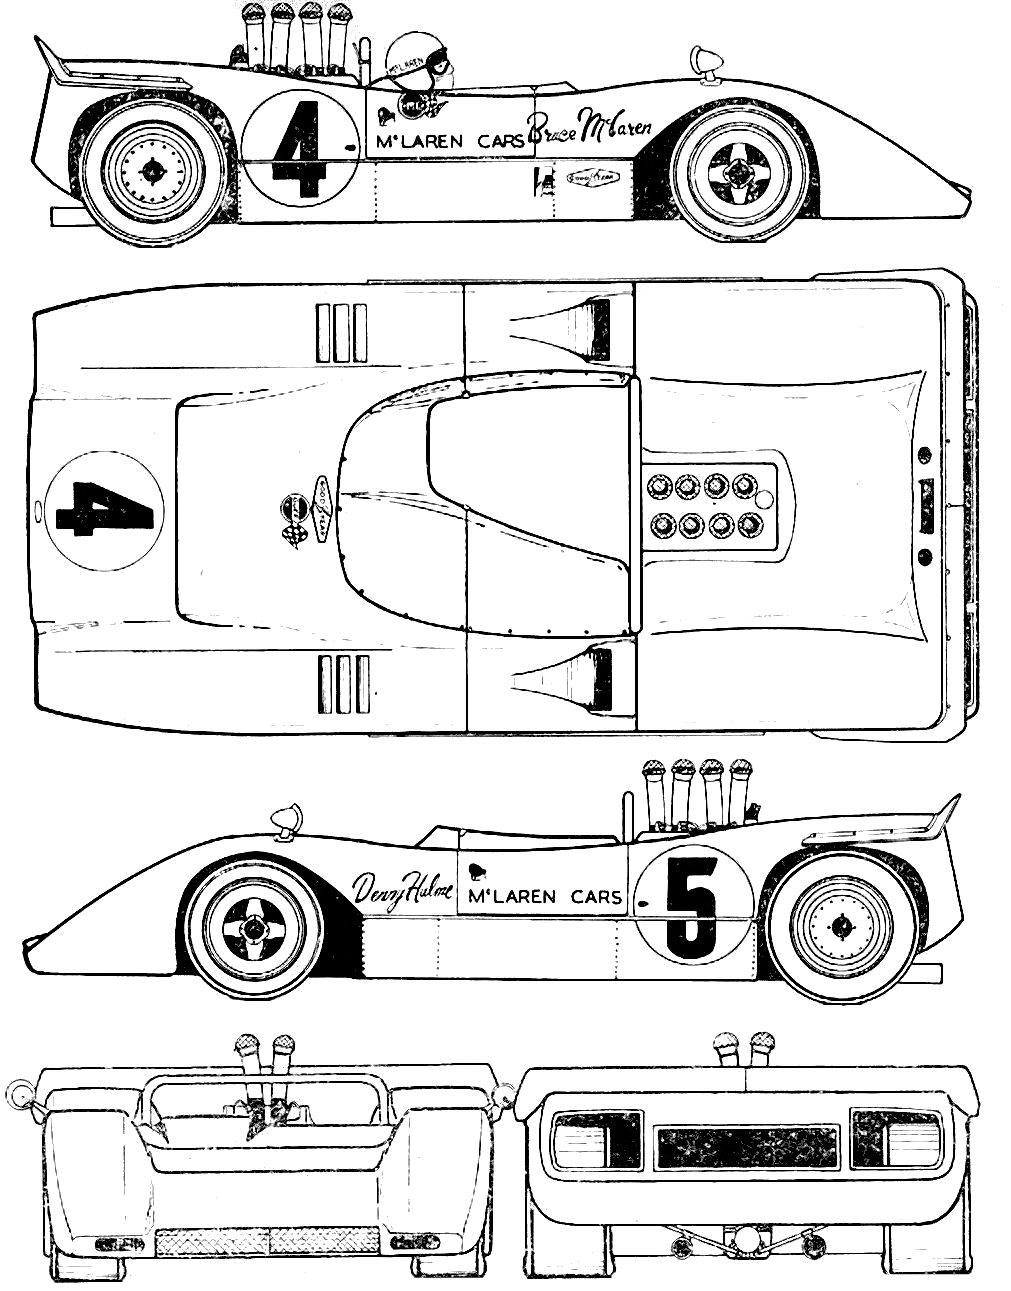 McLaren M8A blueprint